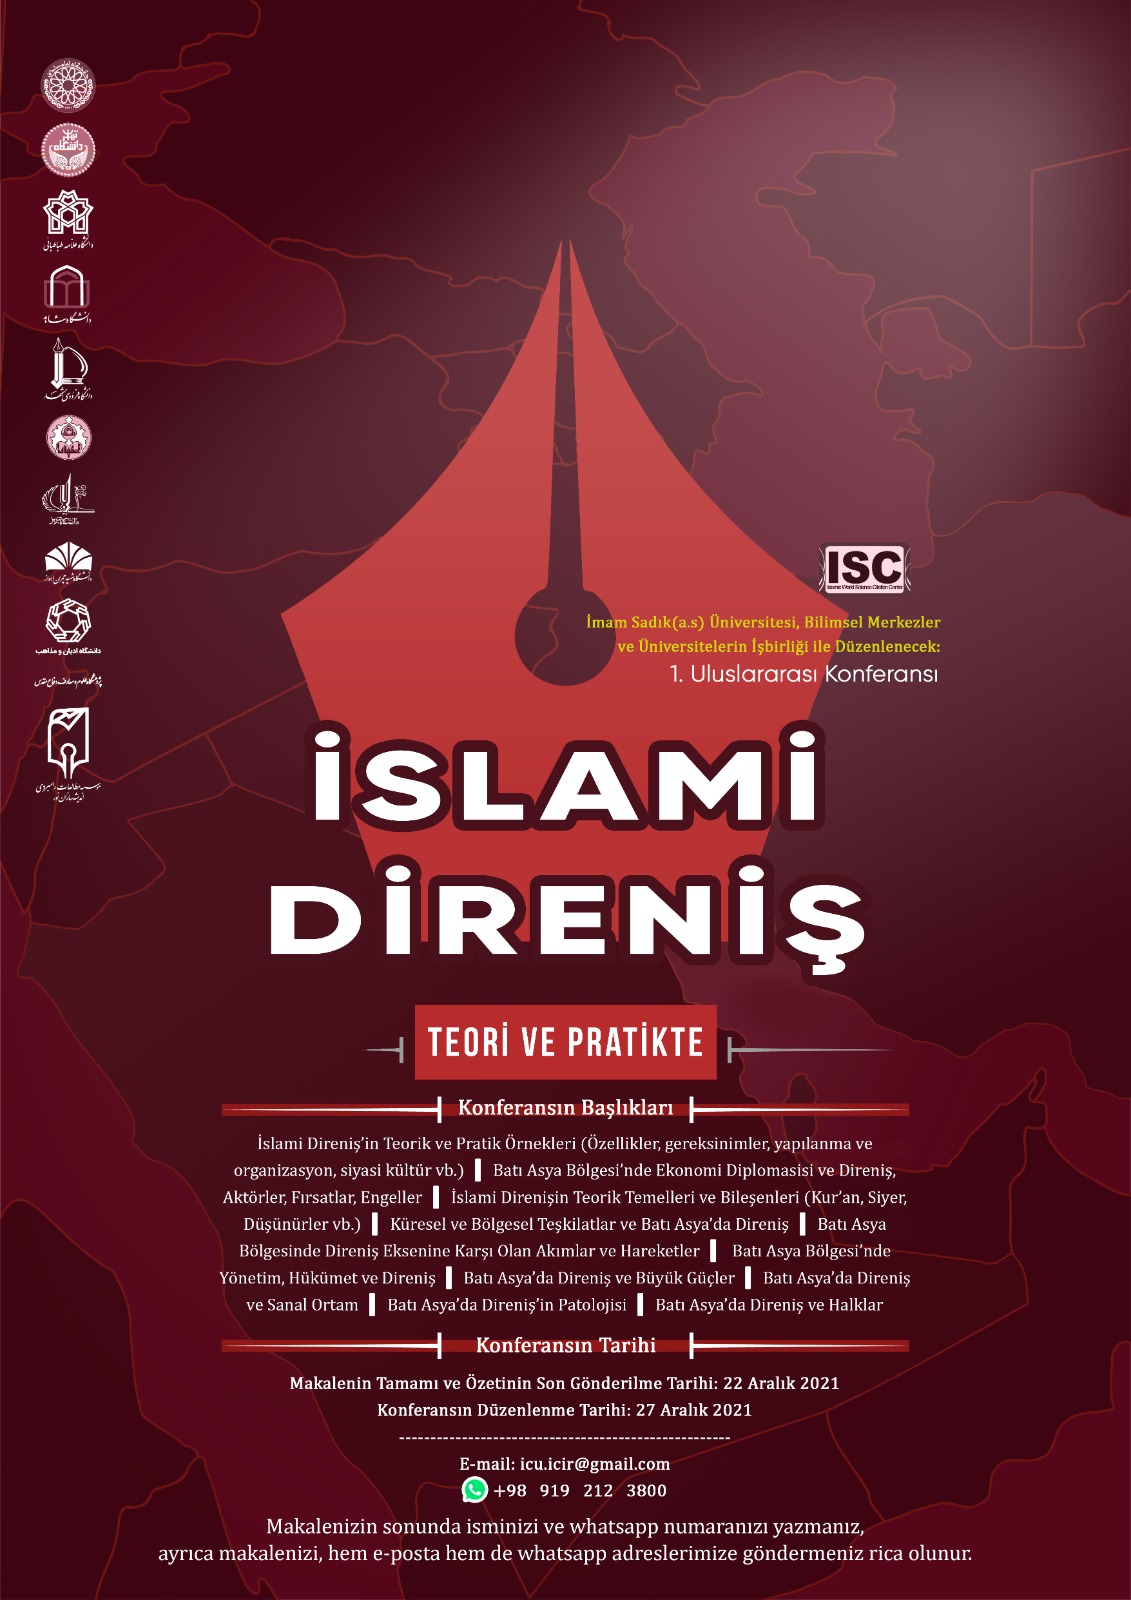 Uluslararası İslami Direniş Konferansına ve Makale Yazımına Davet